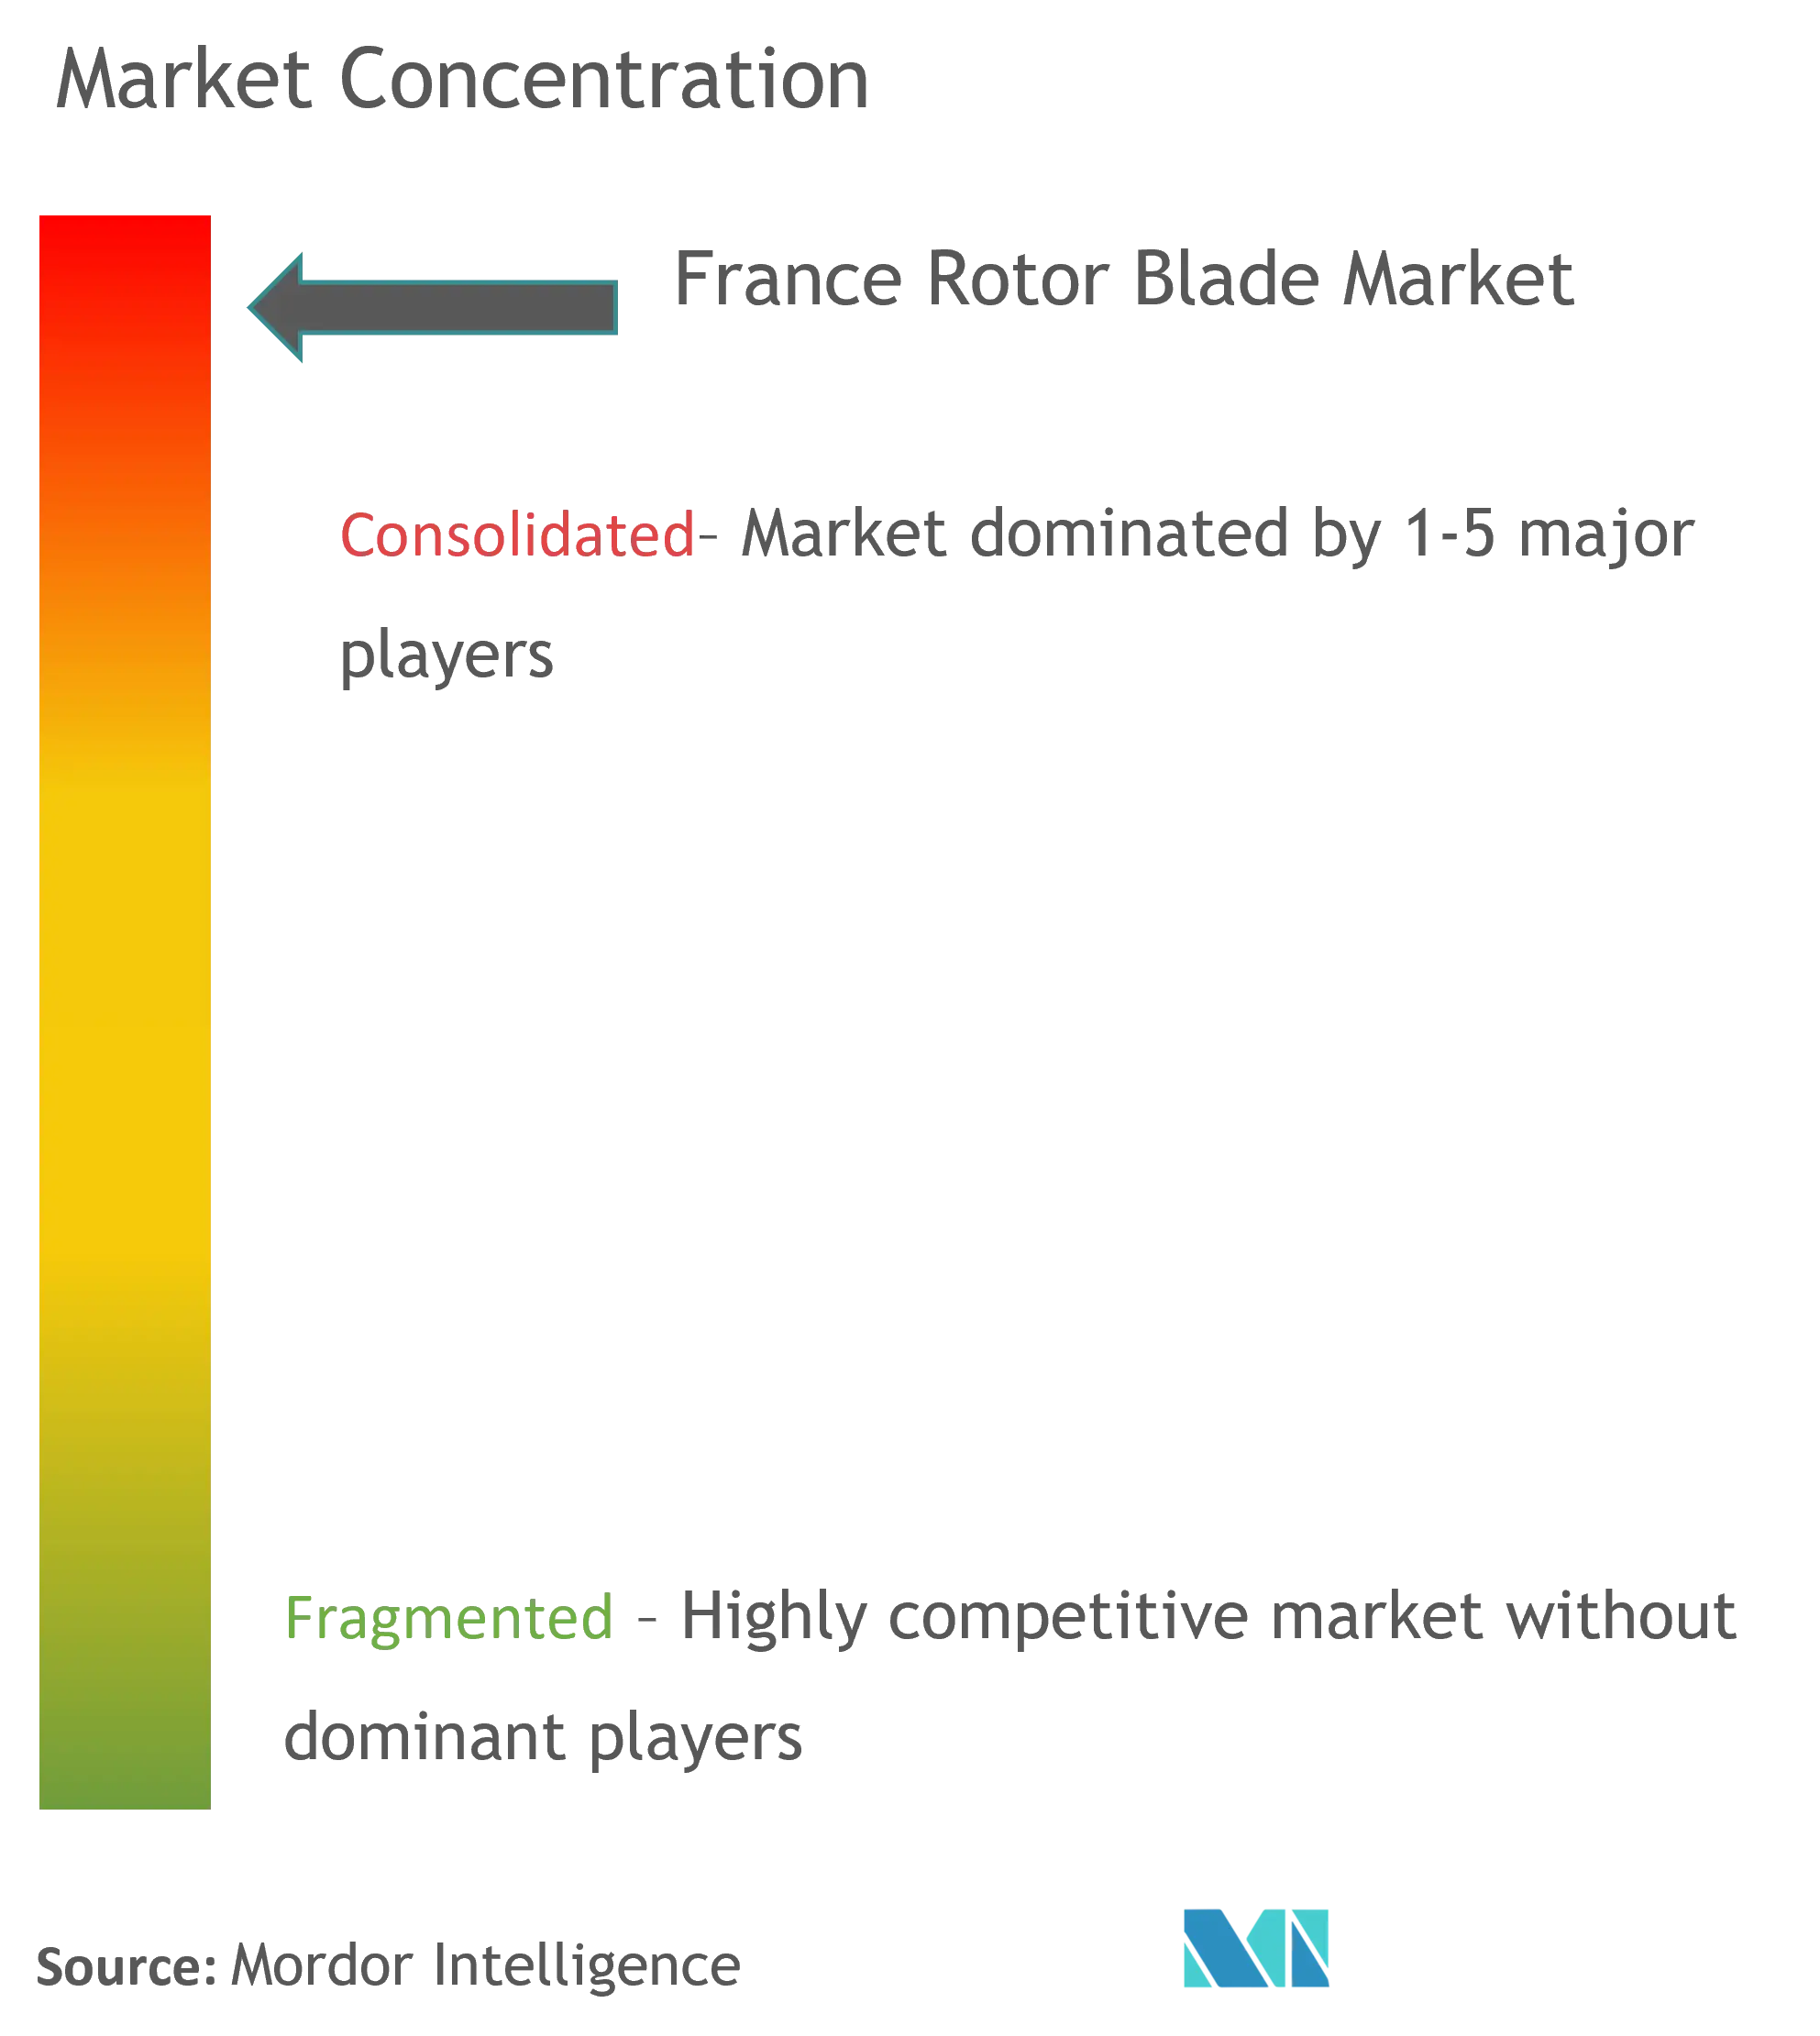 France Rotor Blade Market Concentration.png